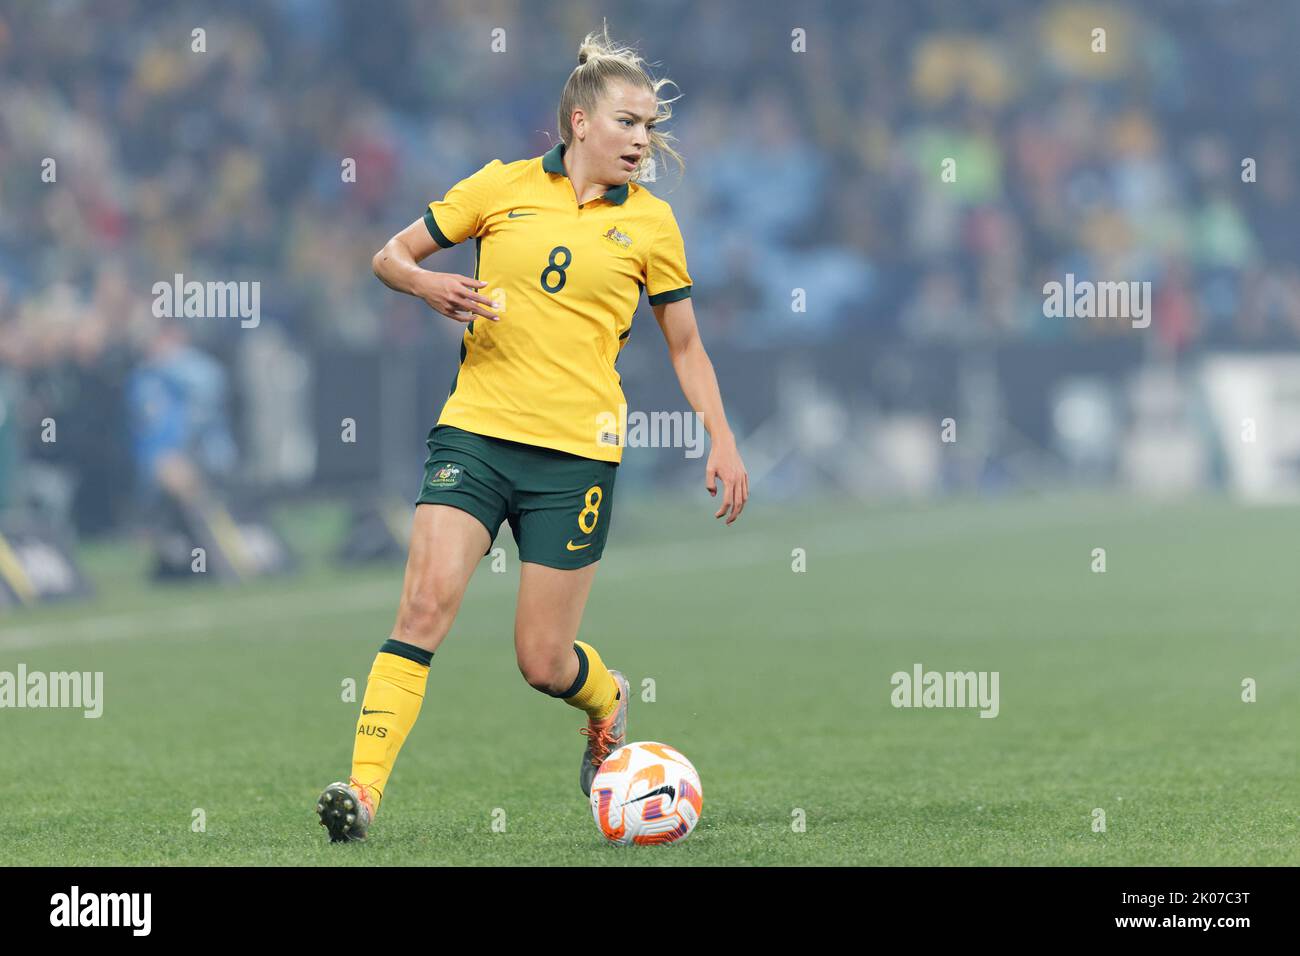 SYDNEY, AUSTRALIA - SETTEMBRE 6: Charlotte Grant of Australia correndo con la palla durante l'International friendly Match tra Australia e Cana Foto Stock